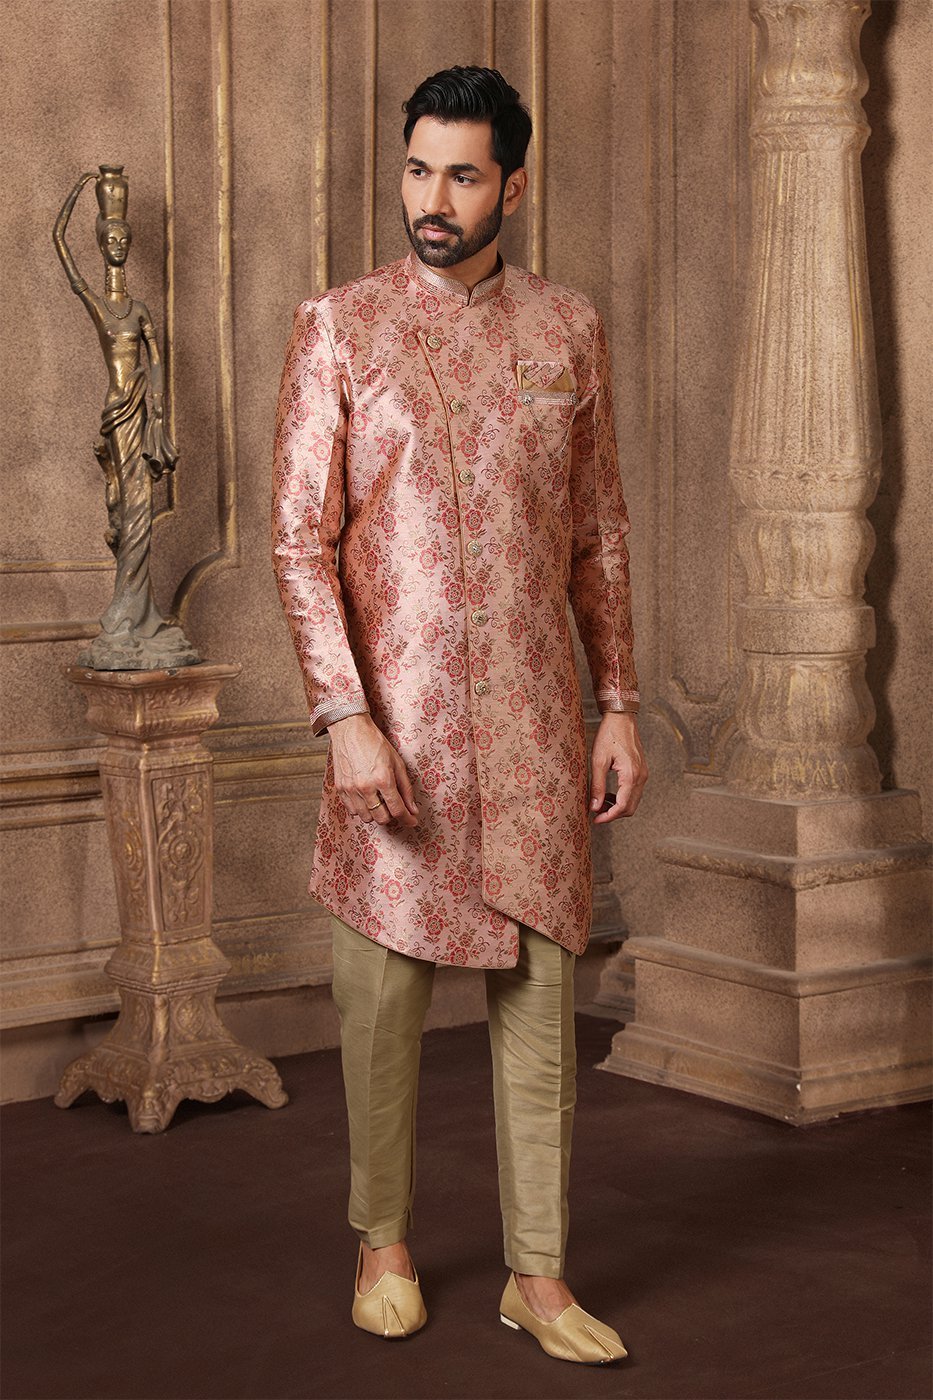 Sequins Work Indowestern Suit In Onion Pink Color | Wedding dresses men  indian, Wedding dress men, Indo western dress for men